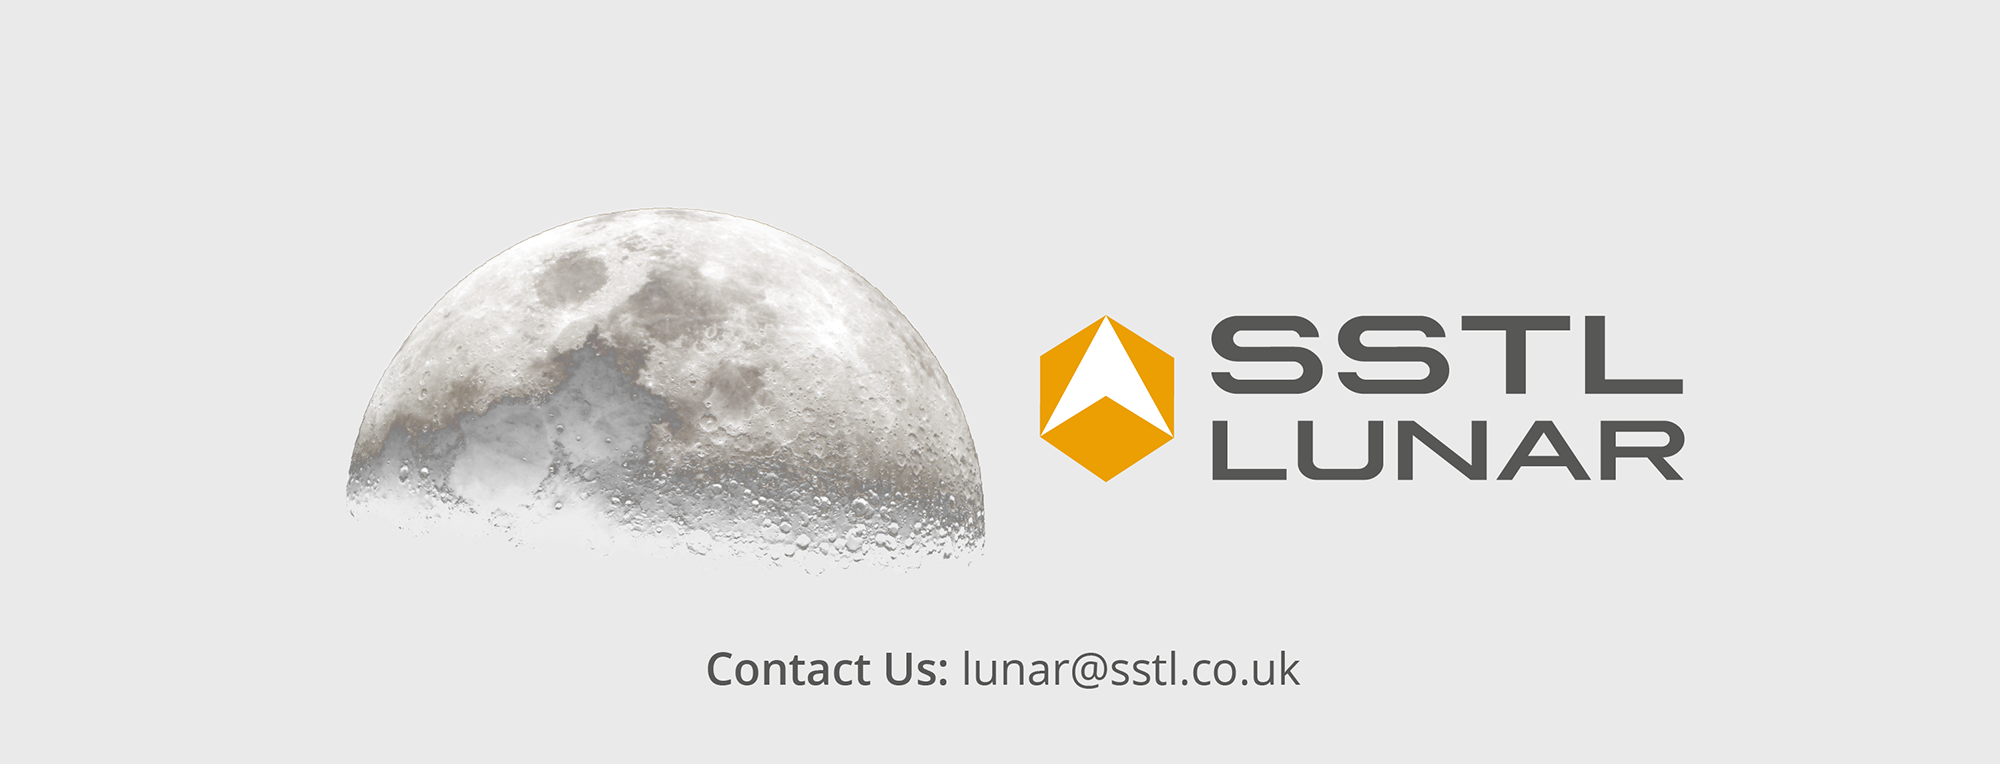 SSTL Lunar Logo